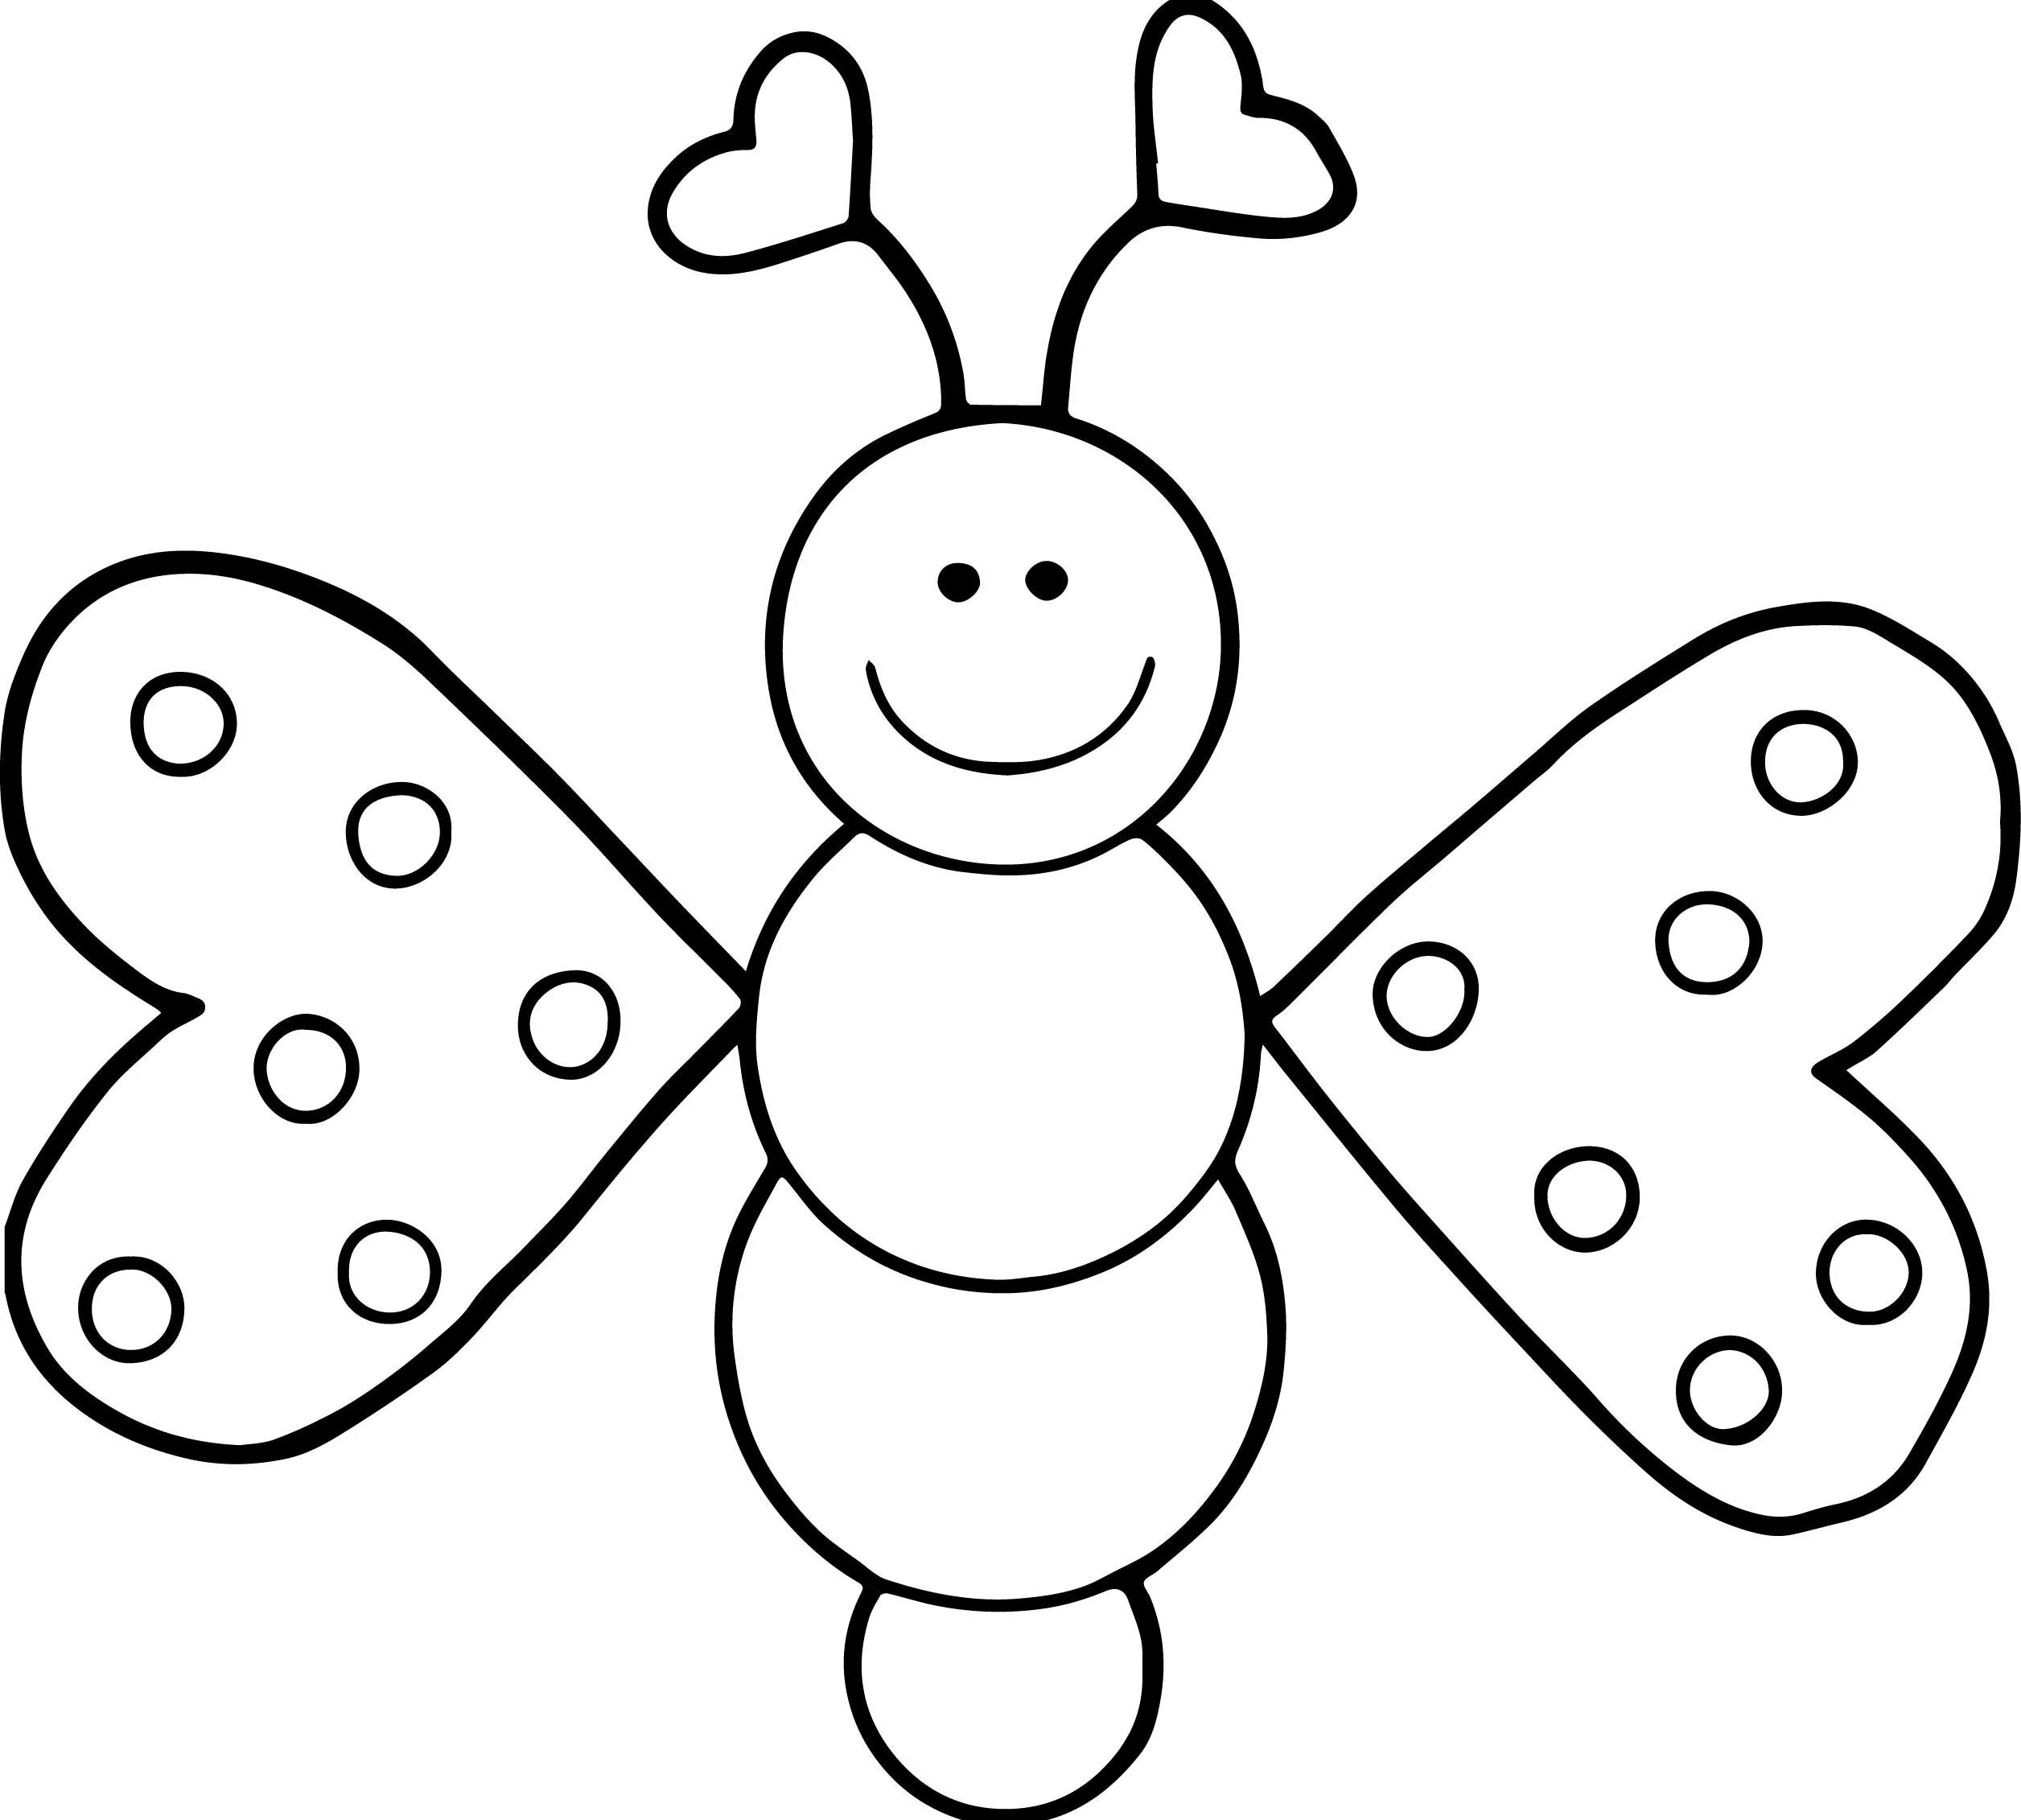 Бабочка раскраска для детей. Бабочка раскраска для детей 3-4 лет. Бабочка раскраска для малышей. Детская раскраска бабочка. Трафарет для детей 3 лет